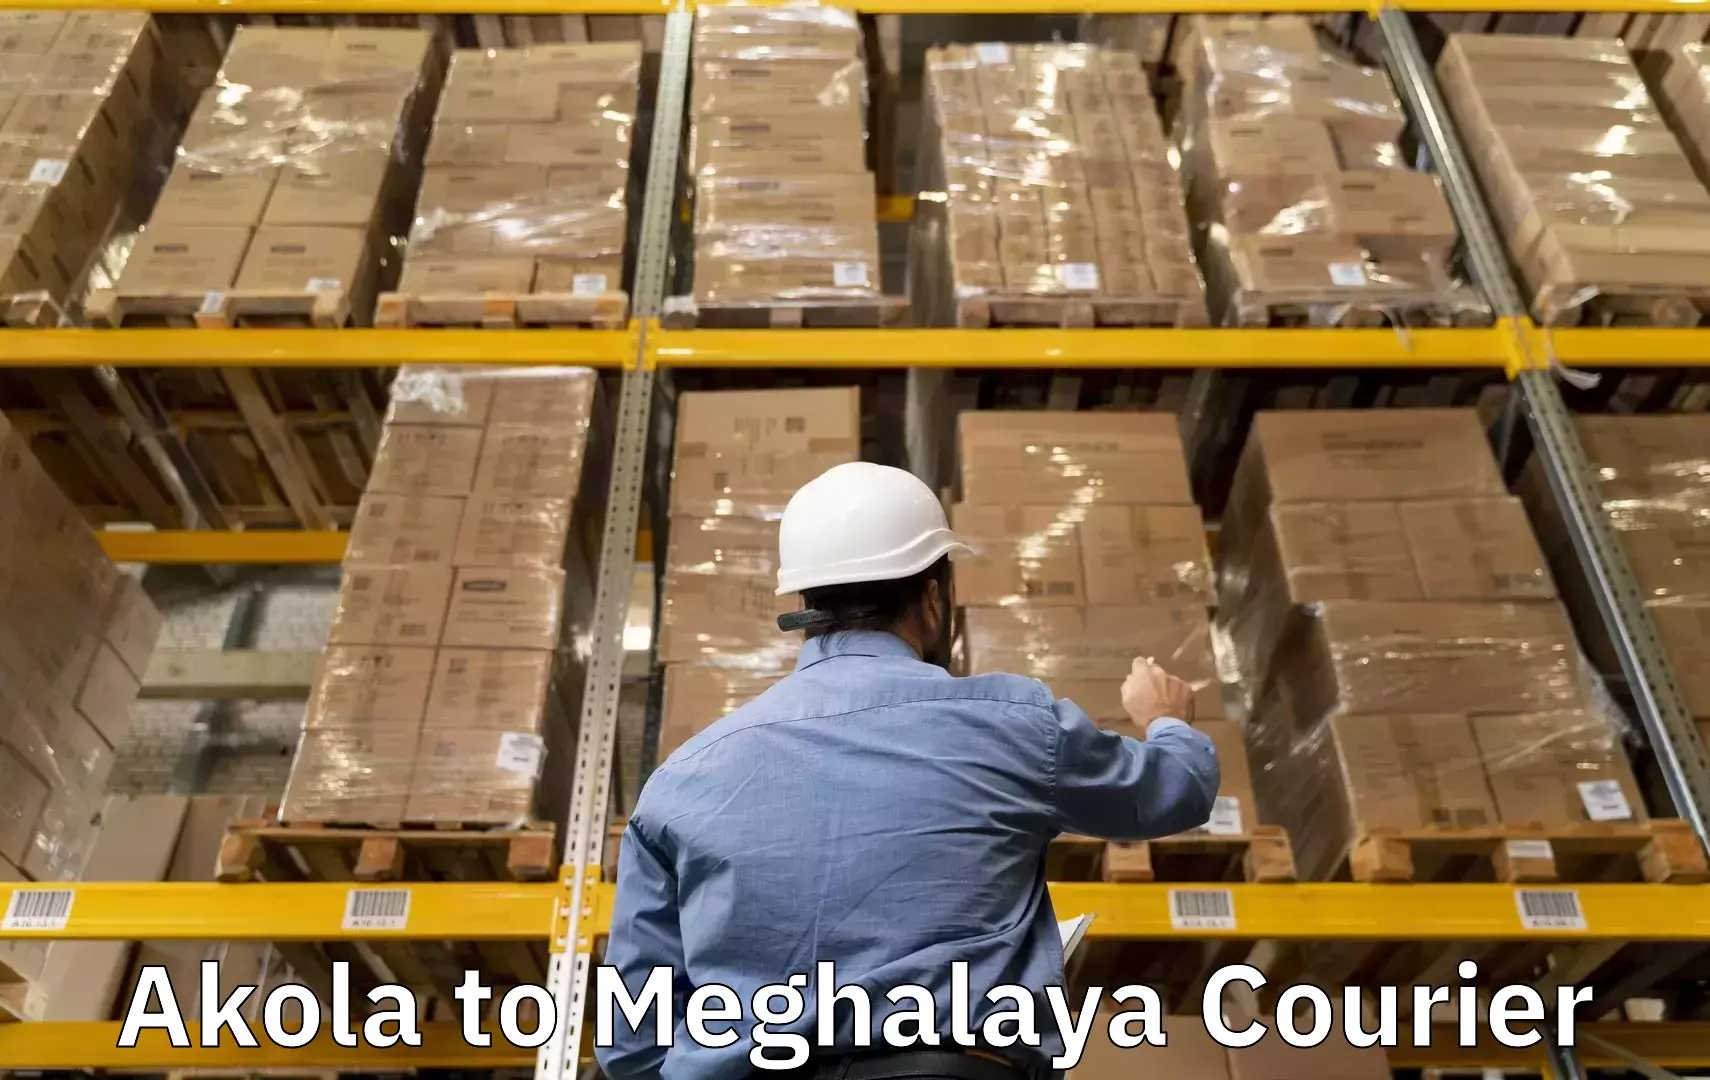 High-quality baggage shipment Akola to Meghalaya